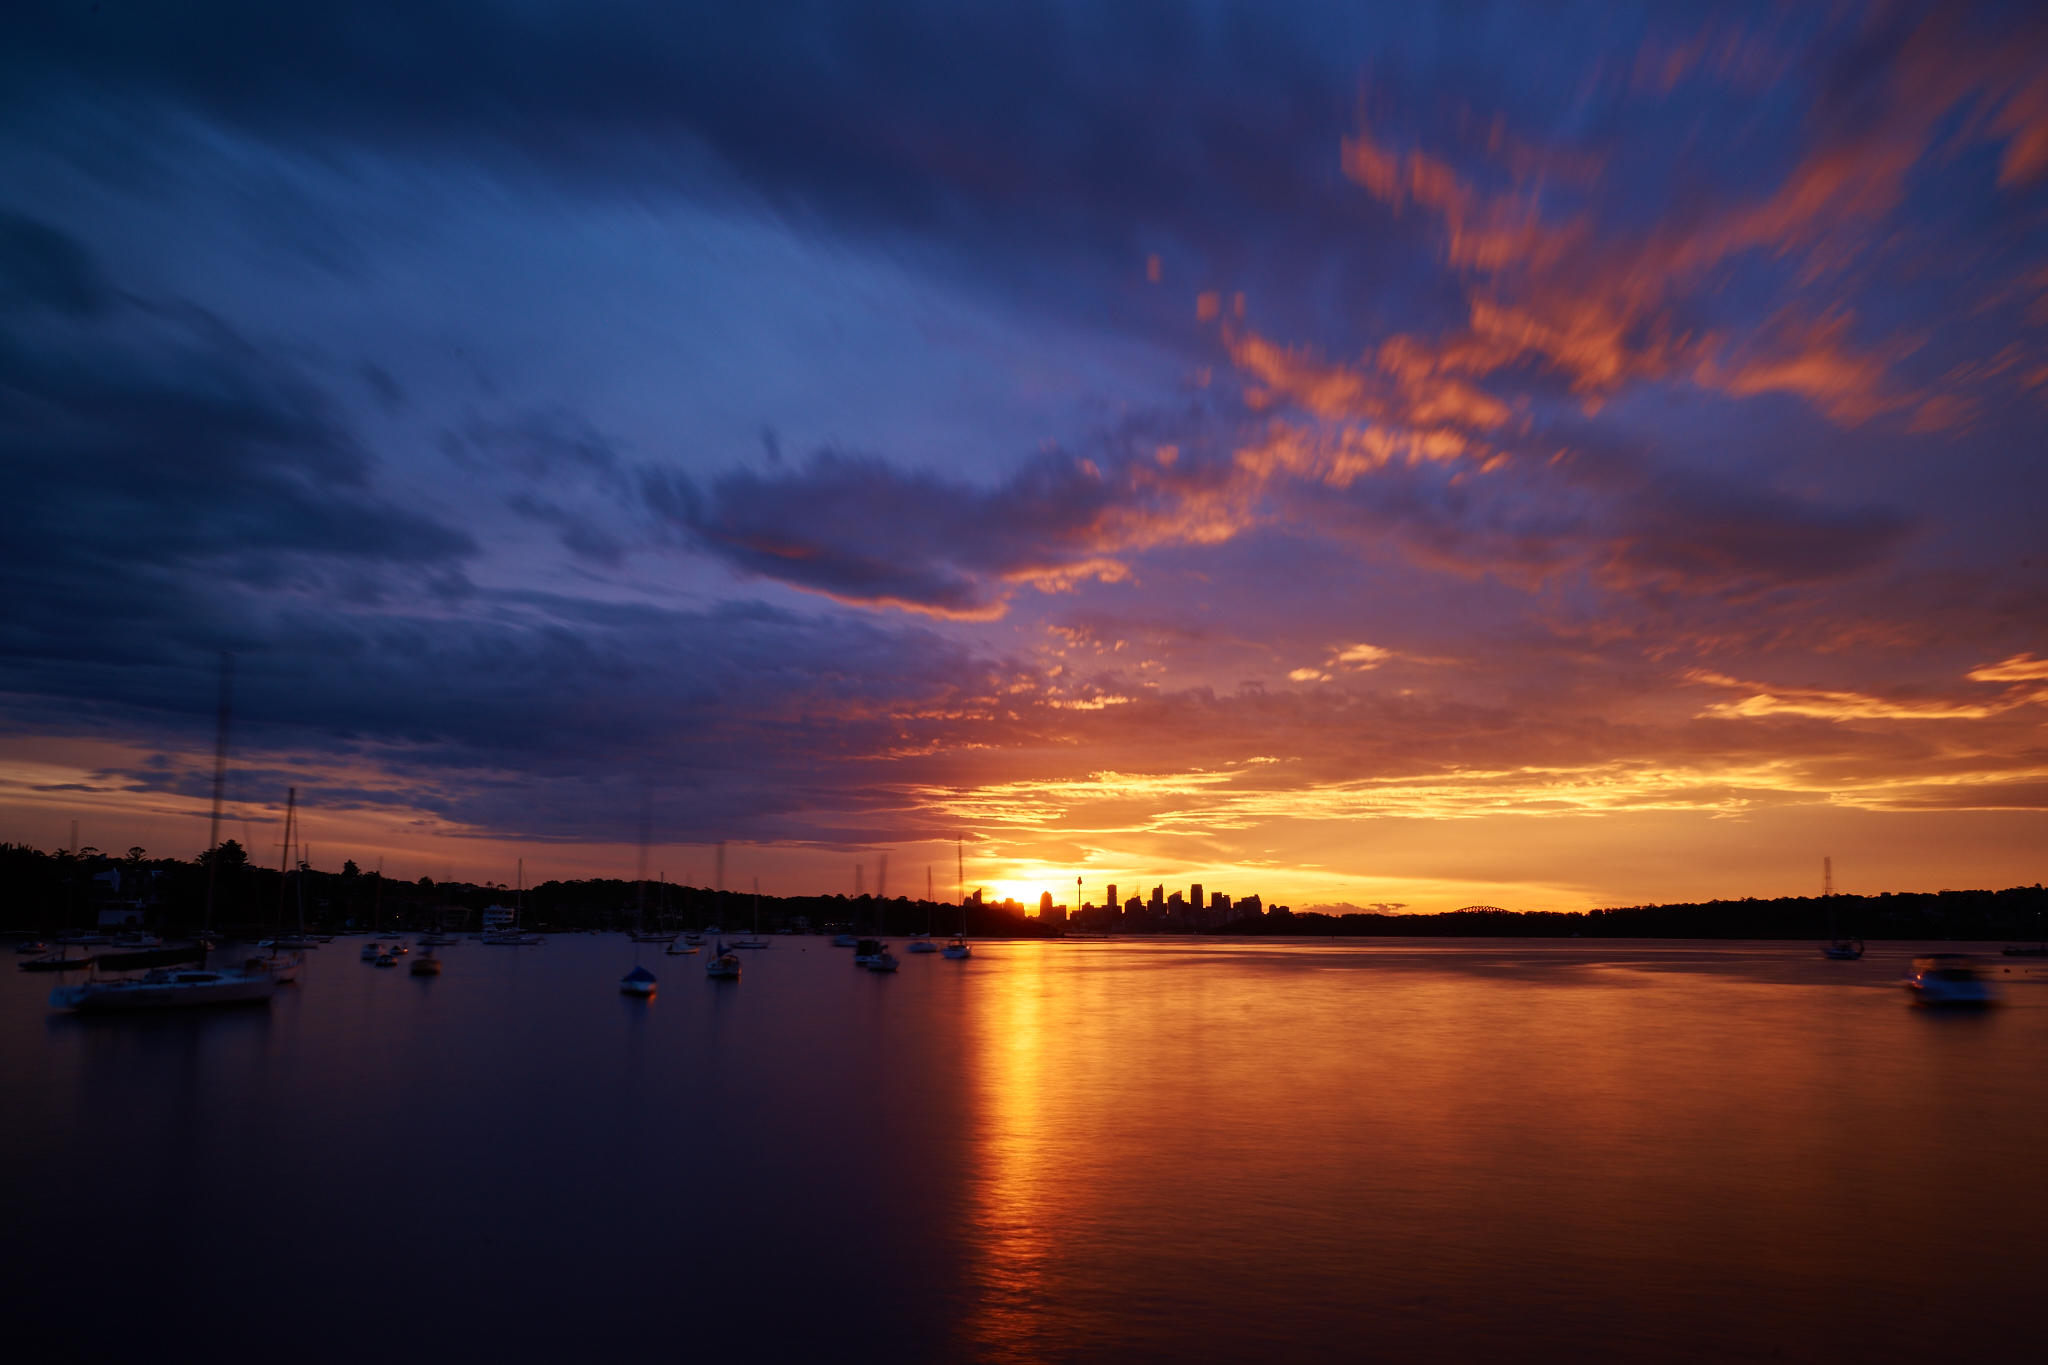 The Sunset @ Watsons Bay